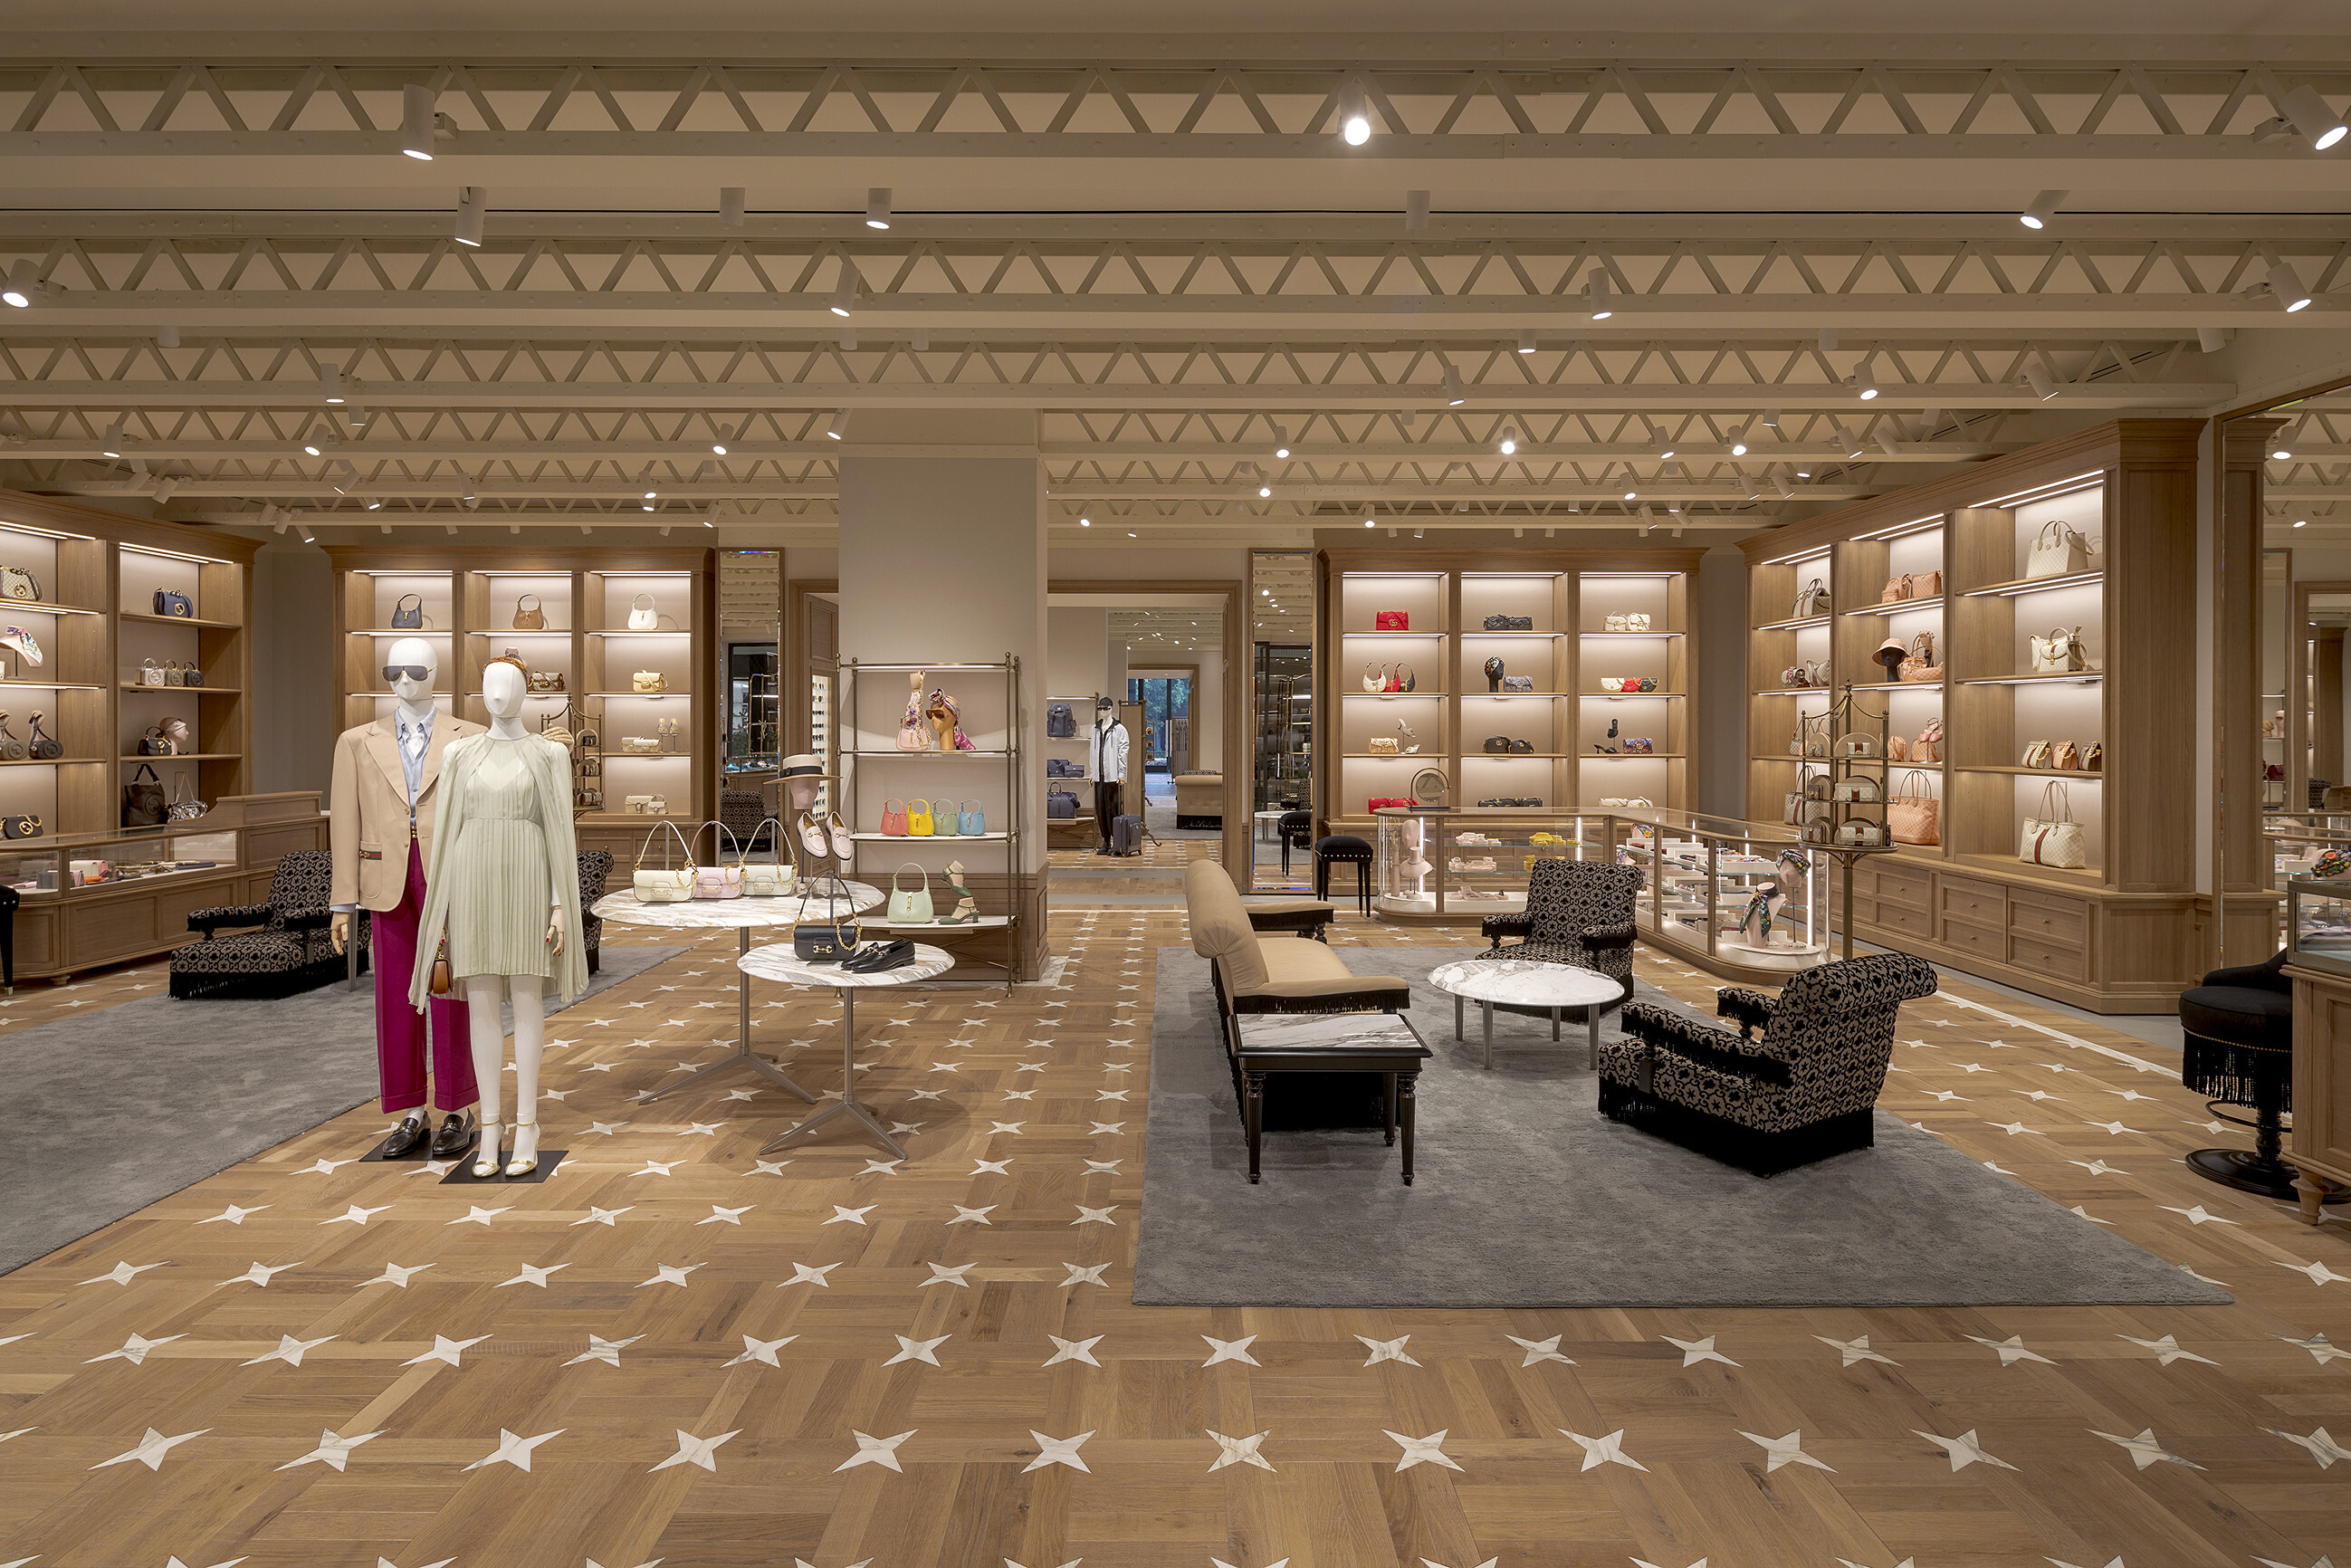 Dallas' NorthPark Center attracts latest store designs in time for